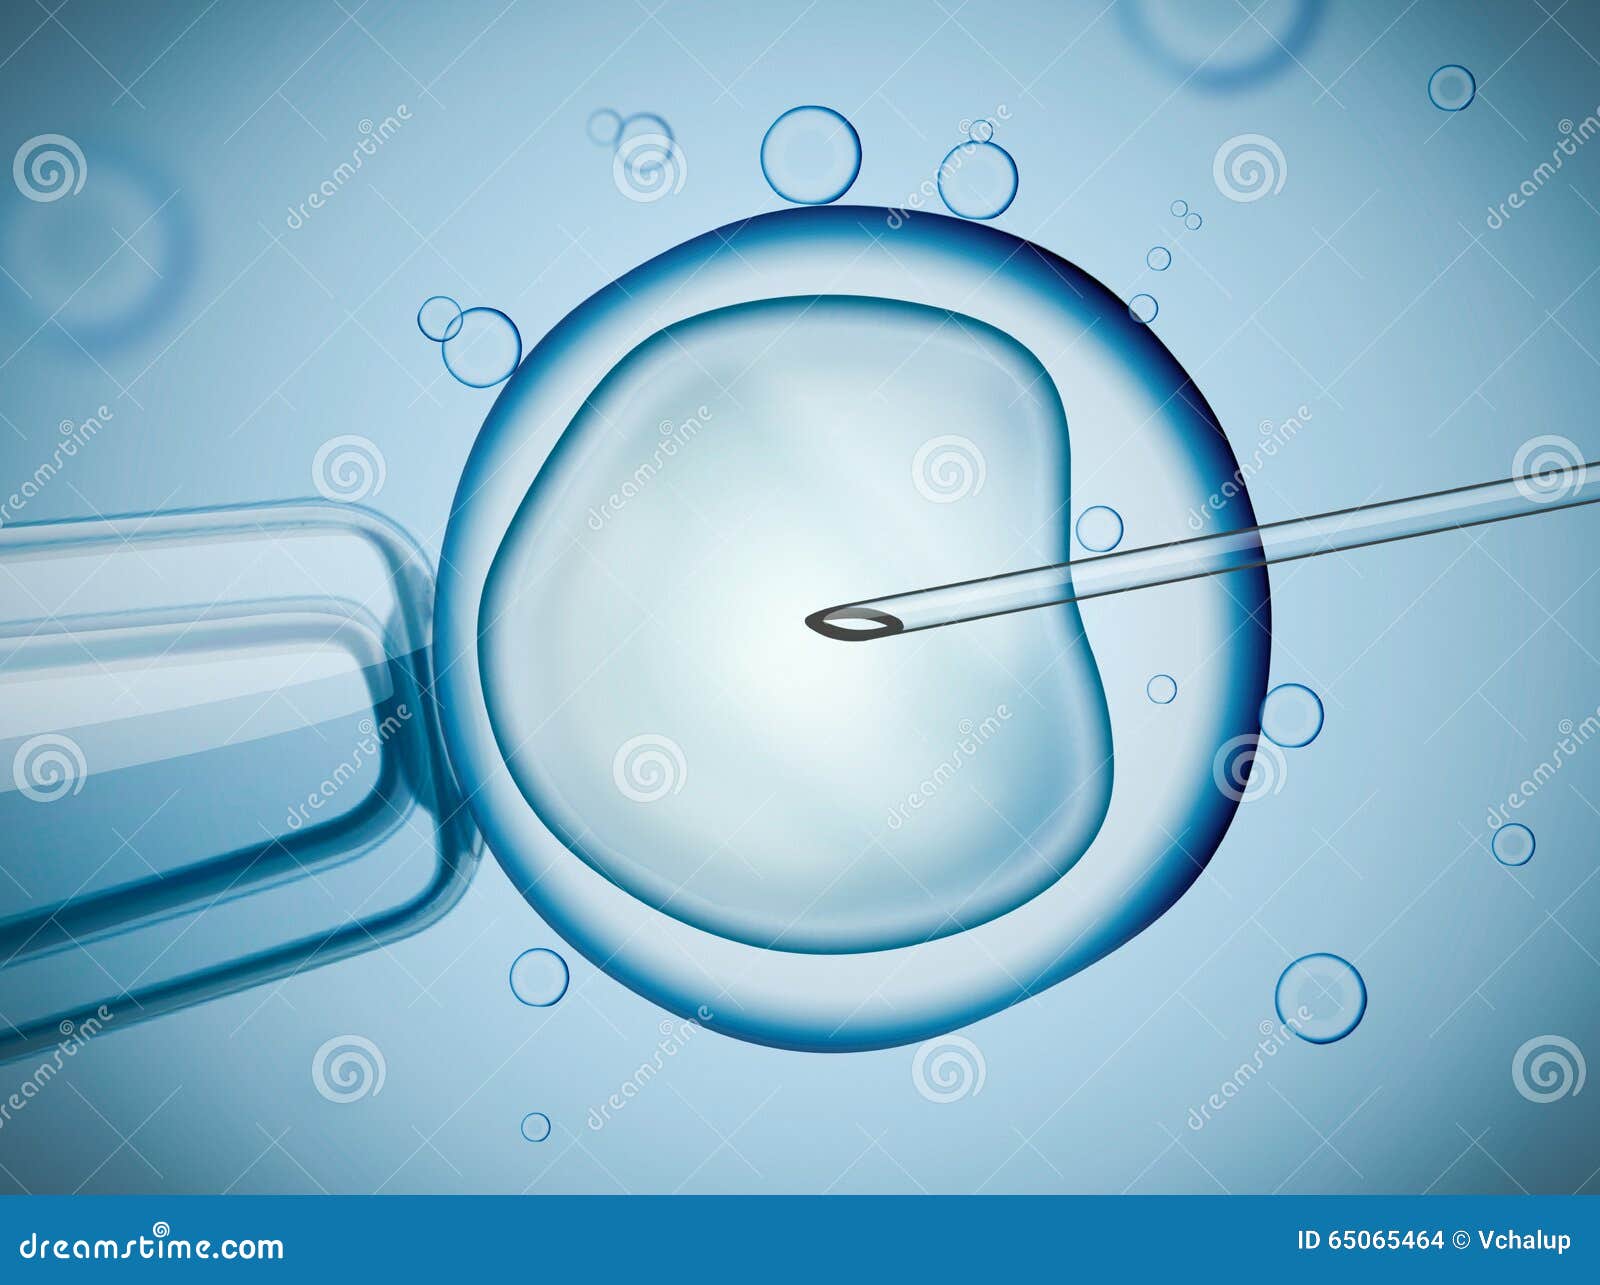 laboratory microscopic research of ivf (in vitro fertilization).